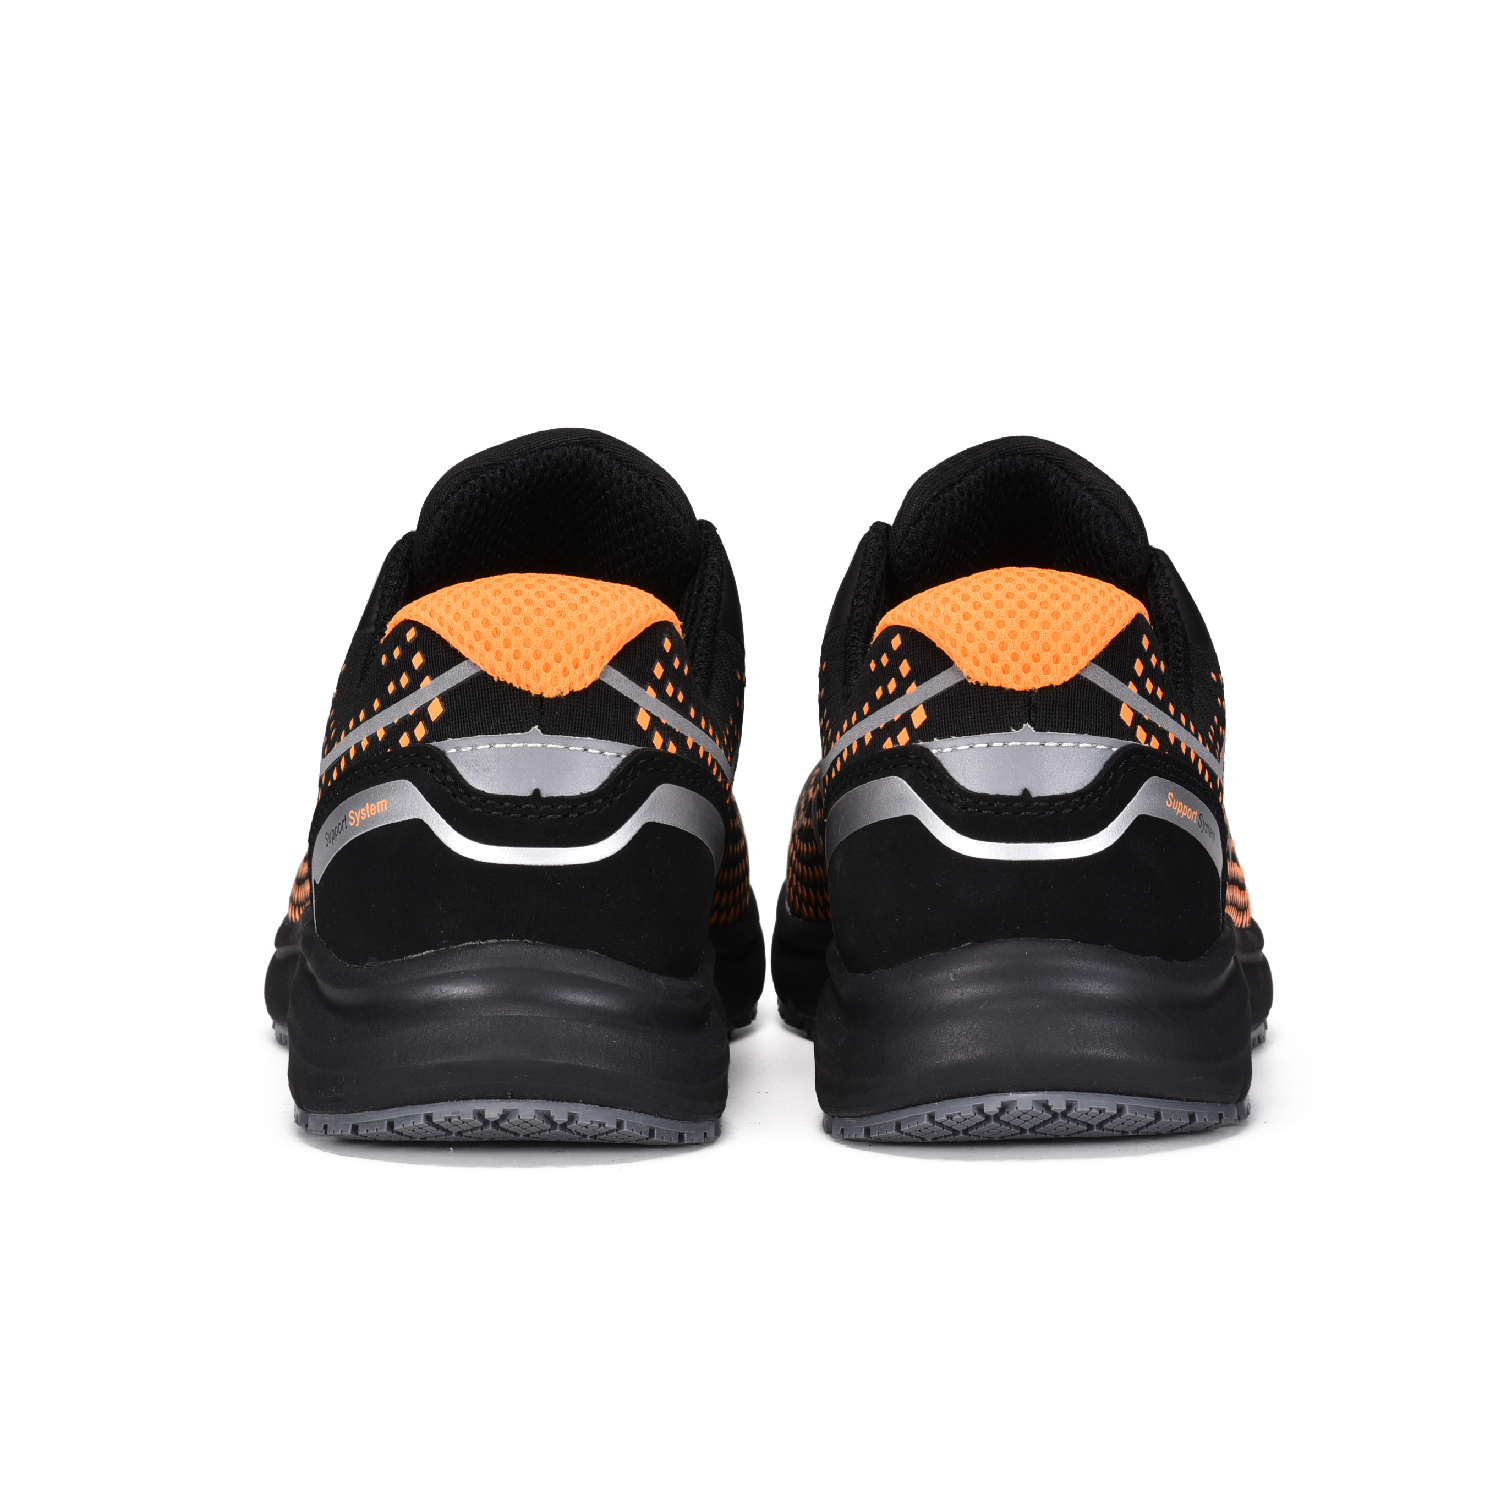 Легкая и дышащая защитная обувь для логистики для Fedex, DHL, UPS, TNT и т. д. L-7530 красный